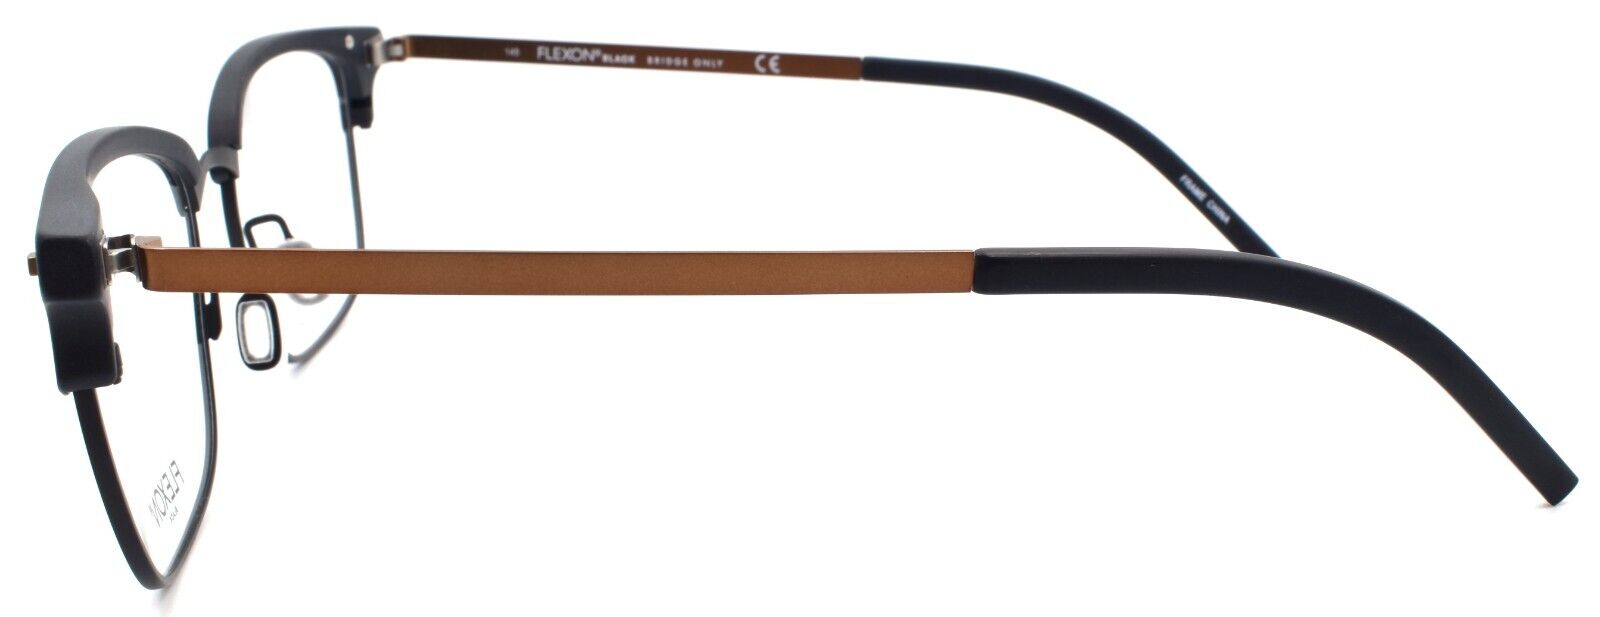 3-Flexon B2022 002 Men's Eyeglasses Frames Black 55-19-145 Flexible Titanium-886895450478-IKSpecs